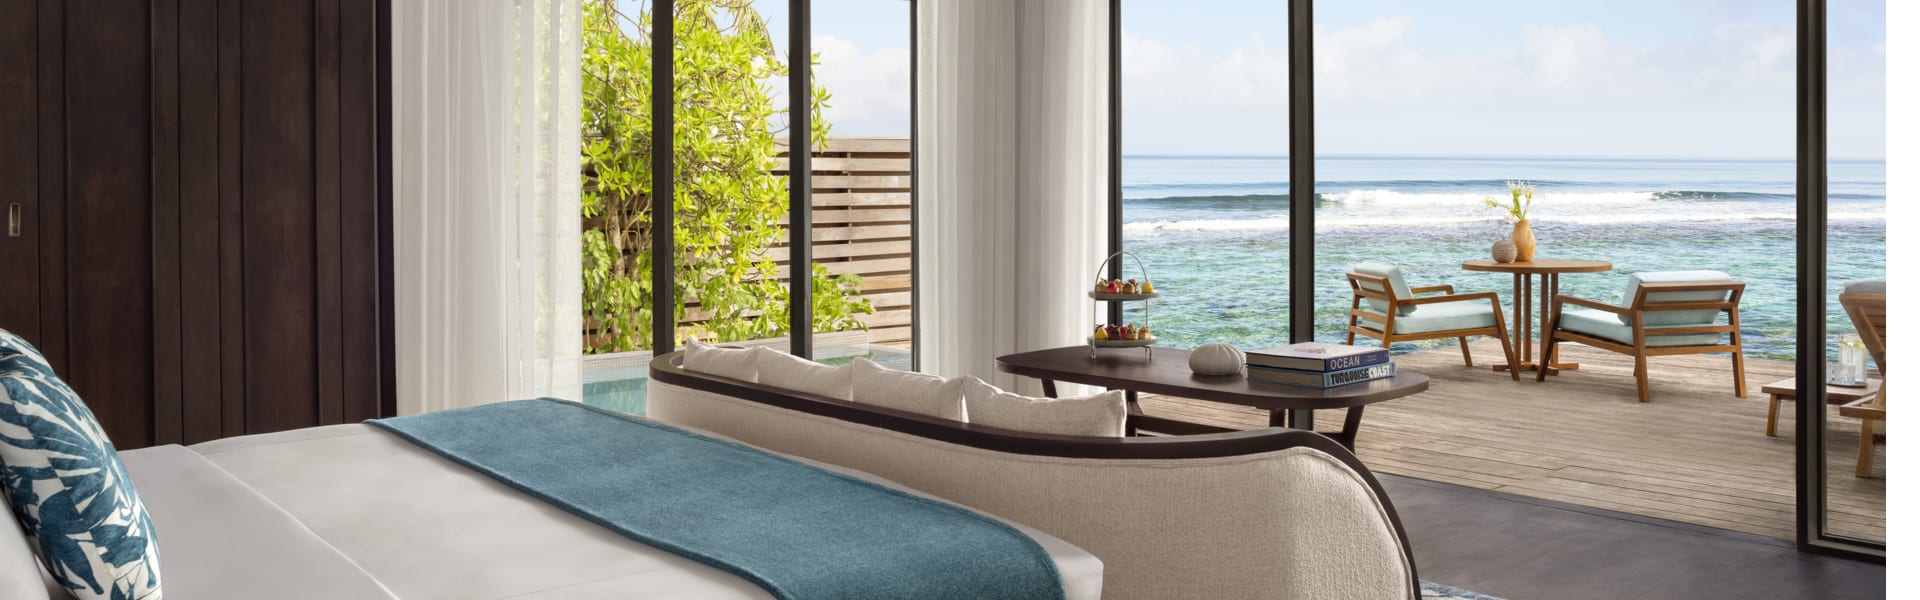 Ocean Pool Villa Bedroom at Anantara Veli Maldives Resort